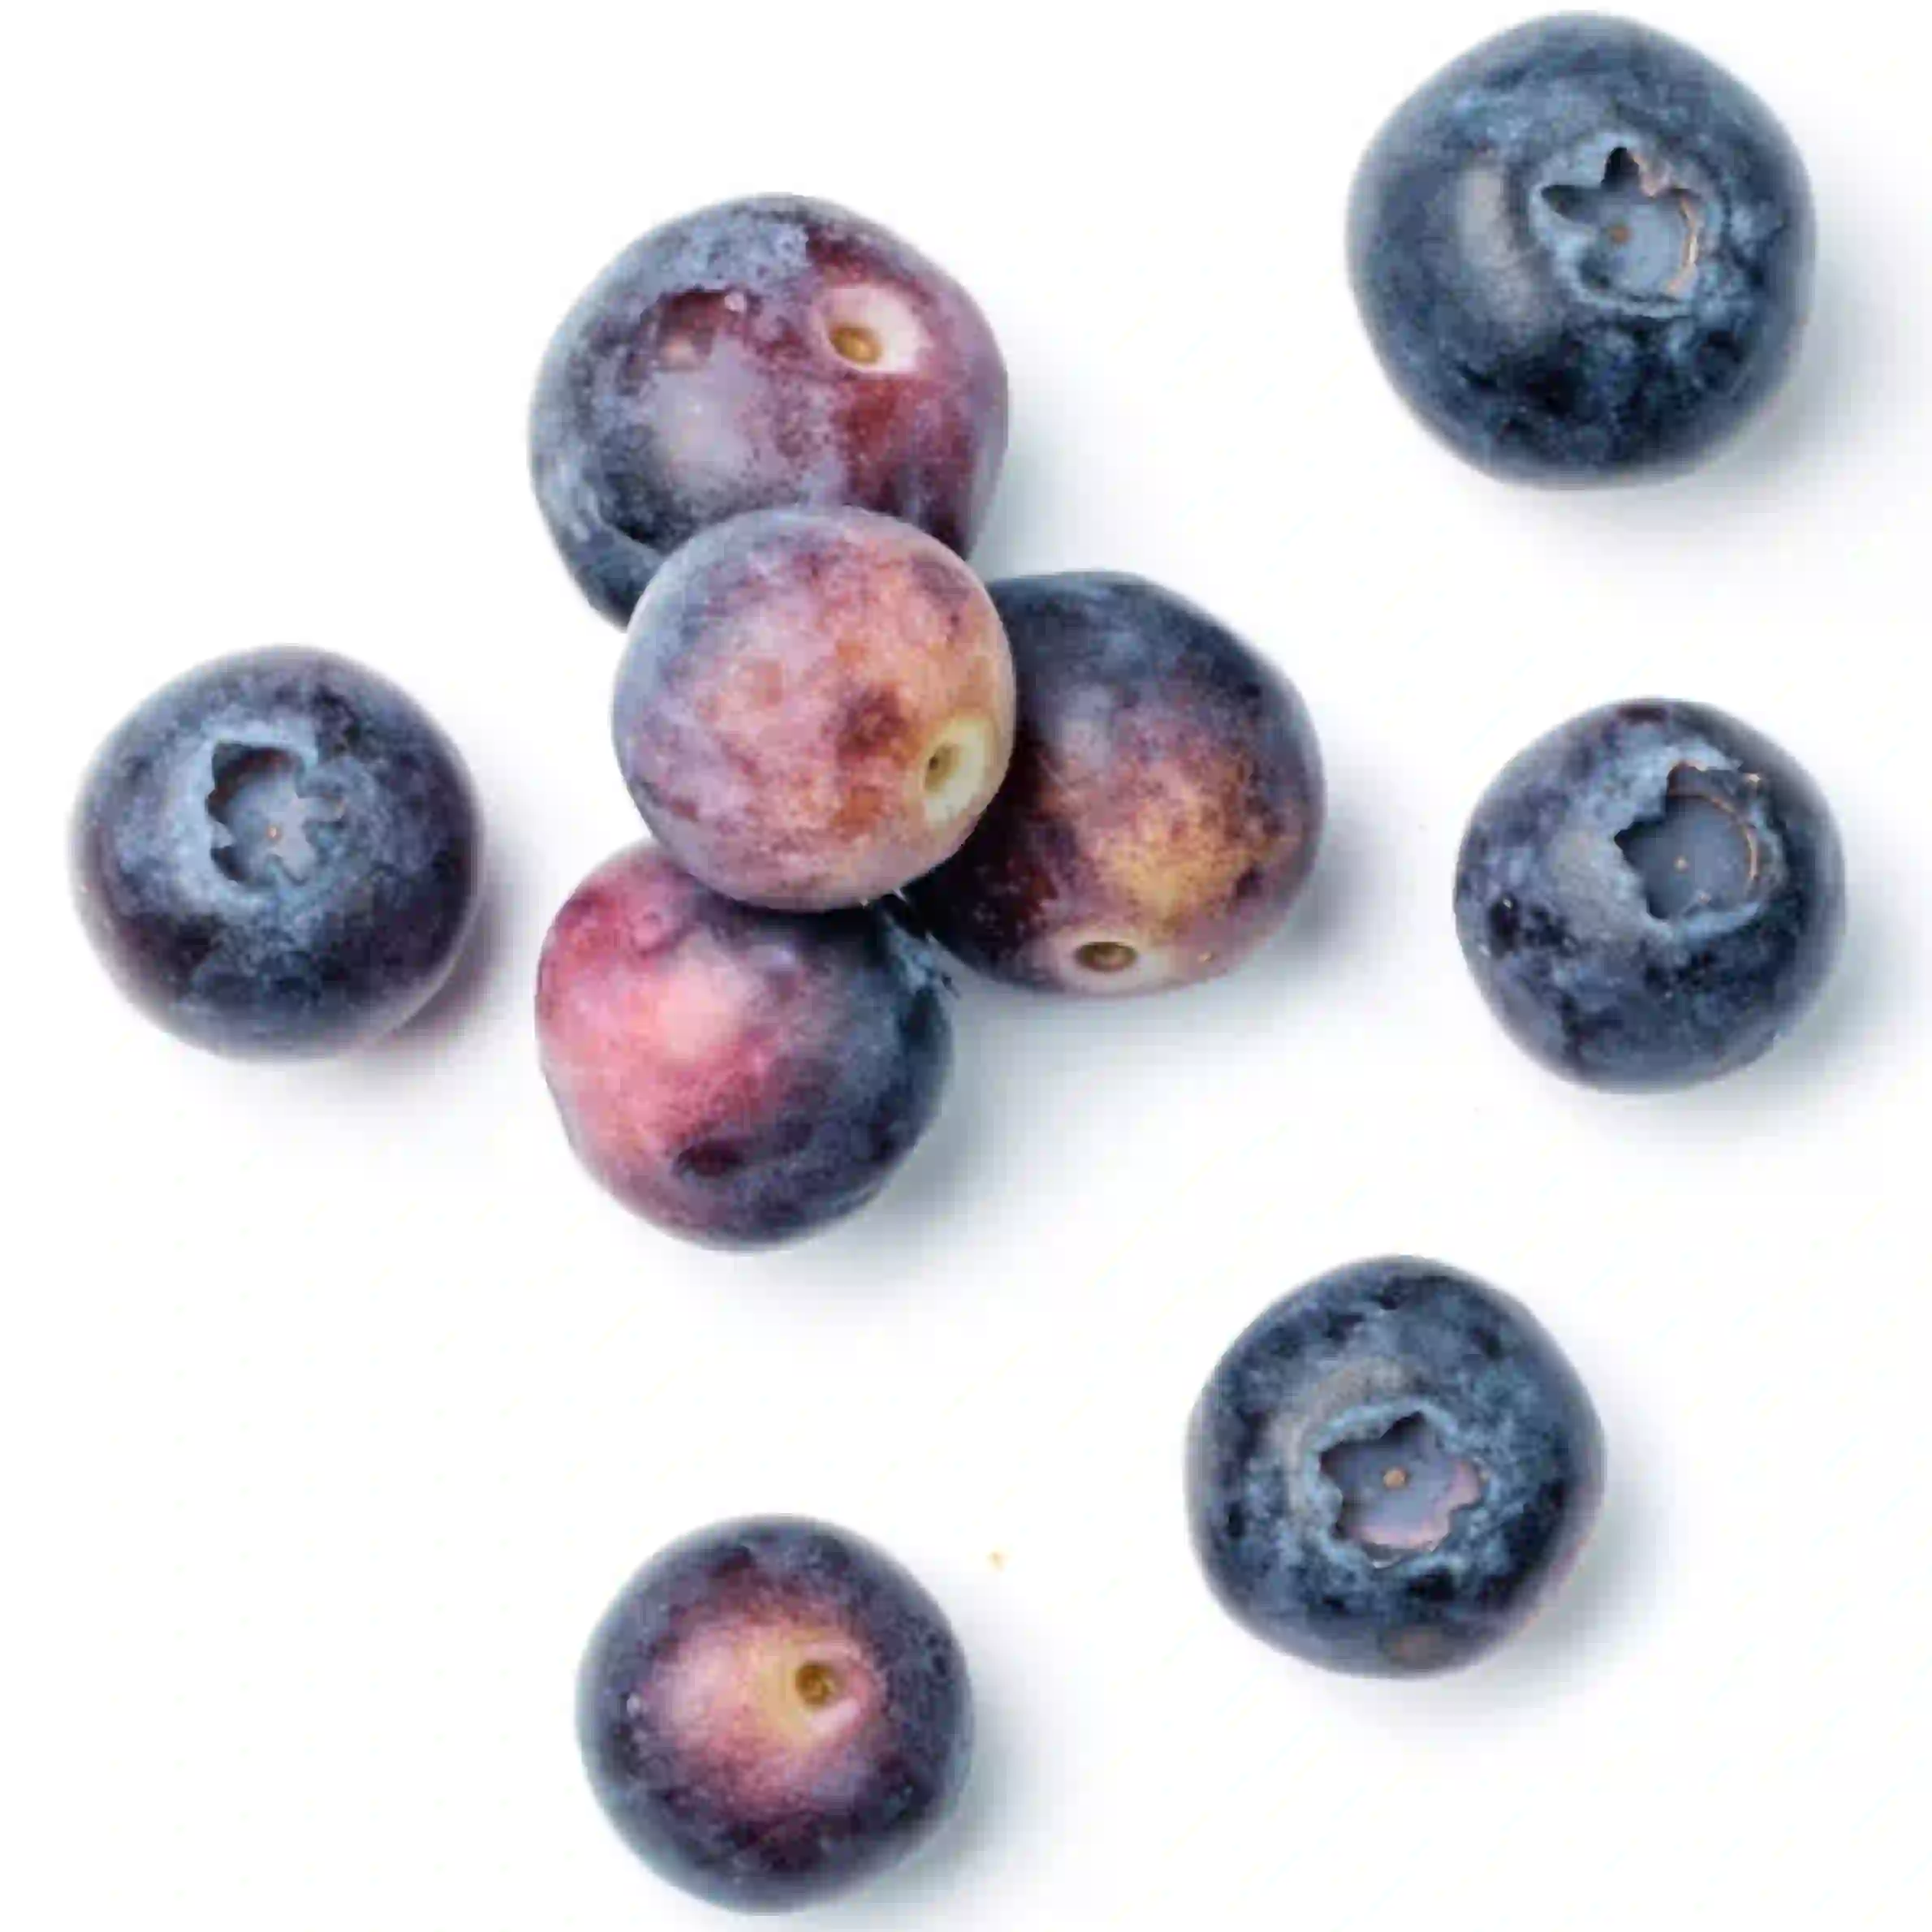 Huckleberry Fruit